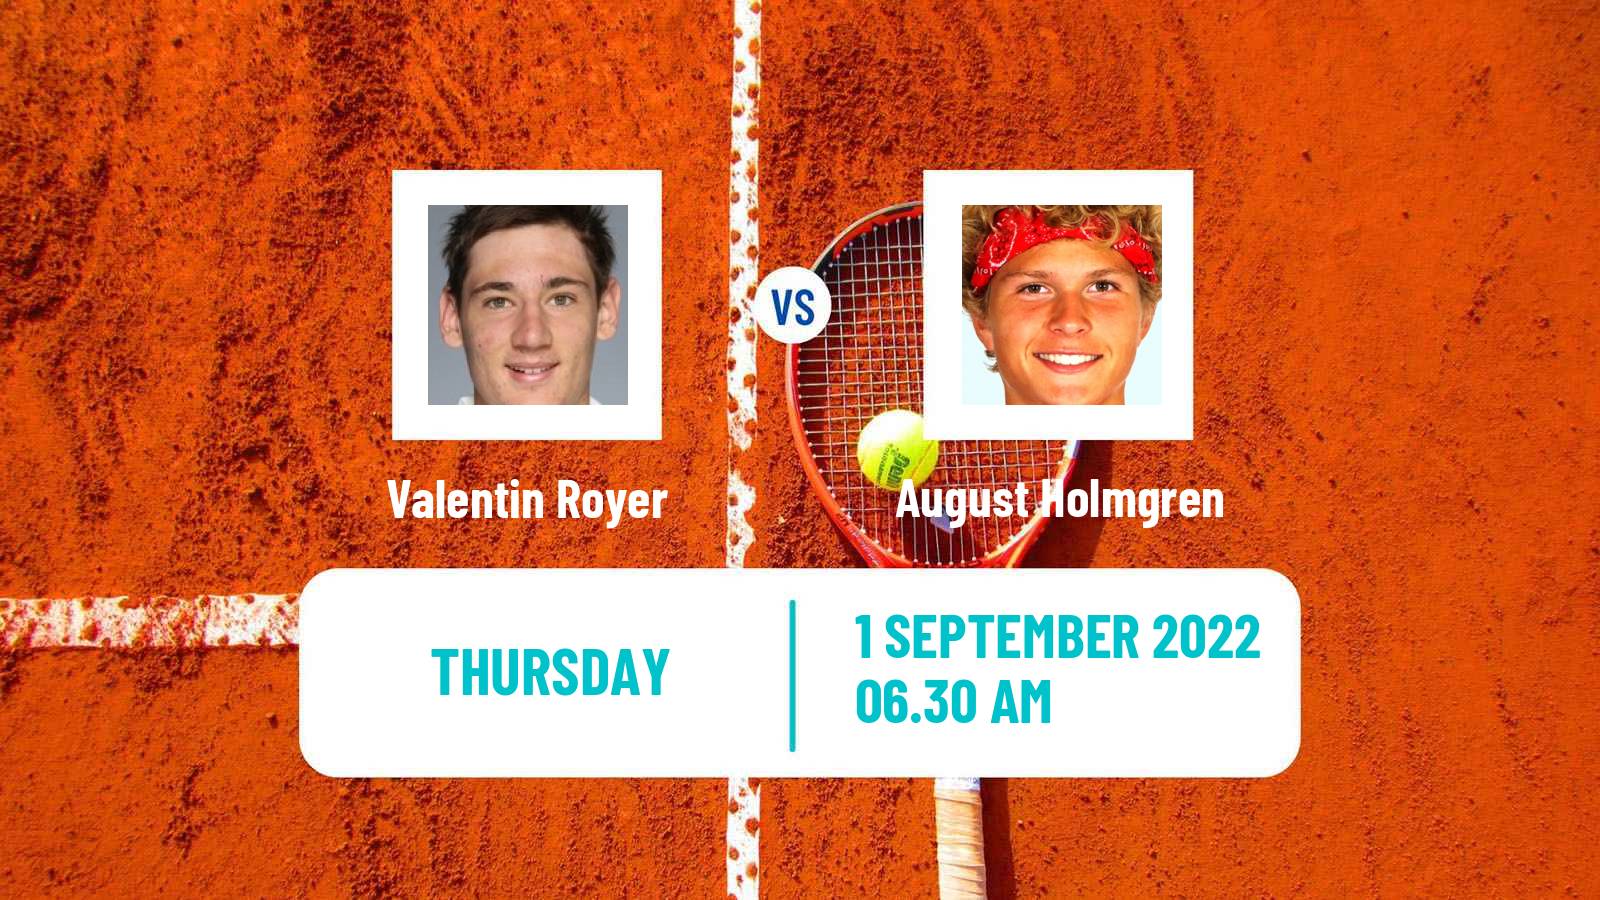 Tennis ITF Tournaments Valentin Royer - August Holmgren